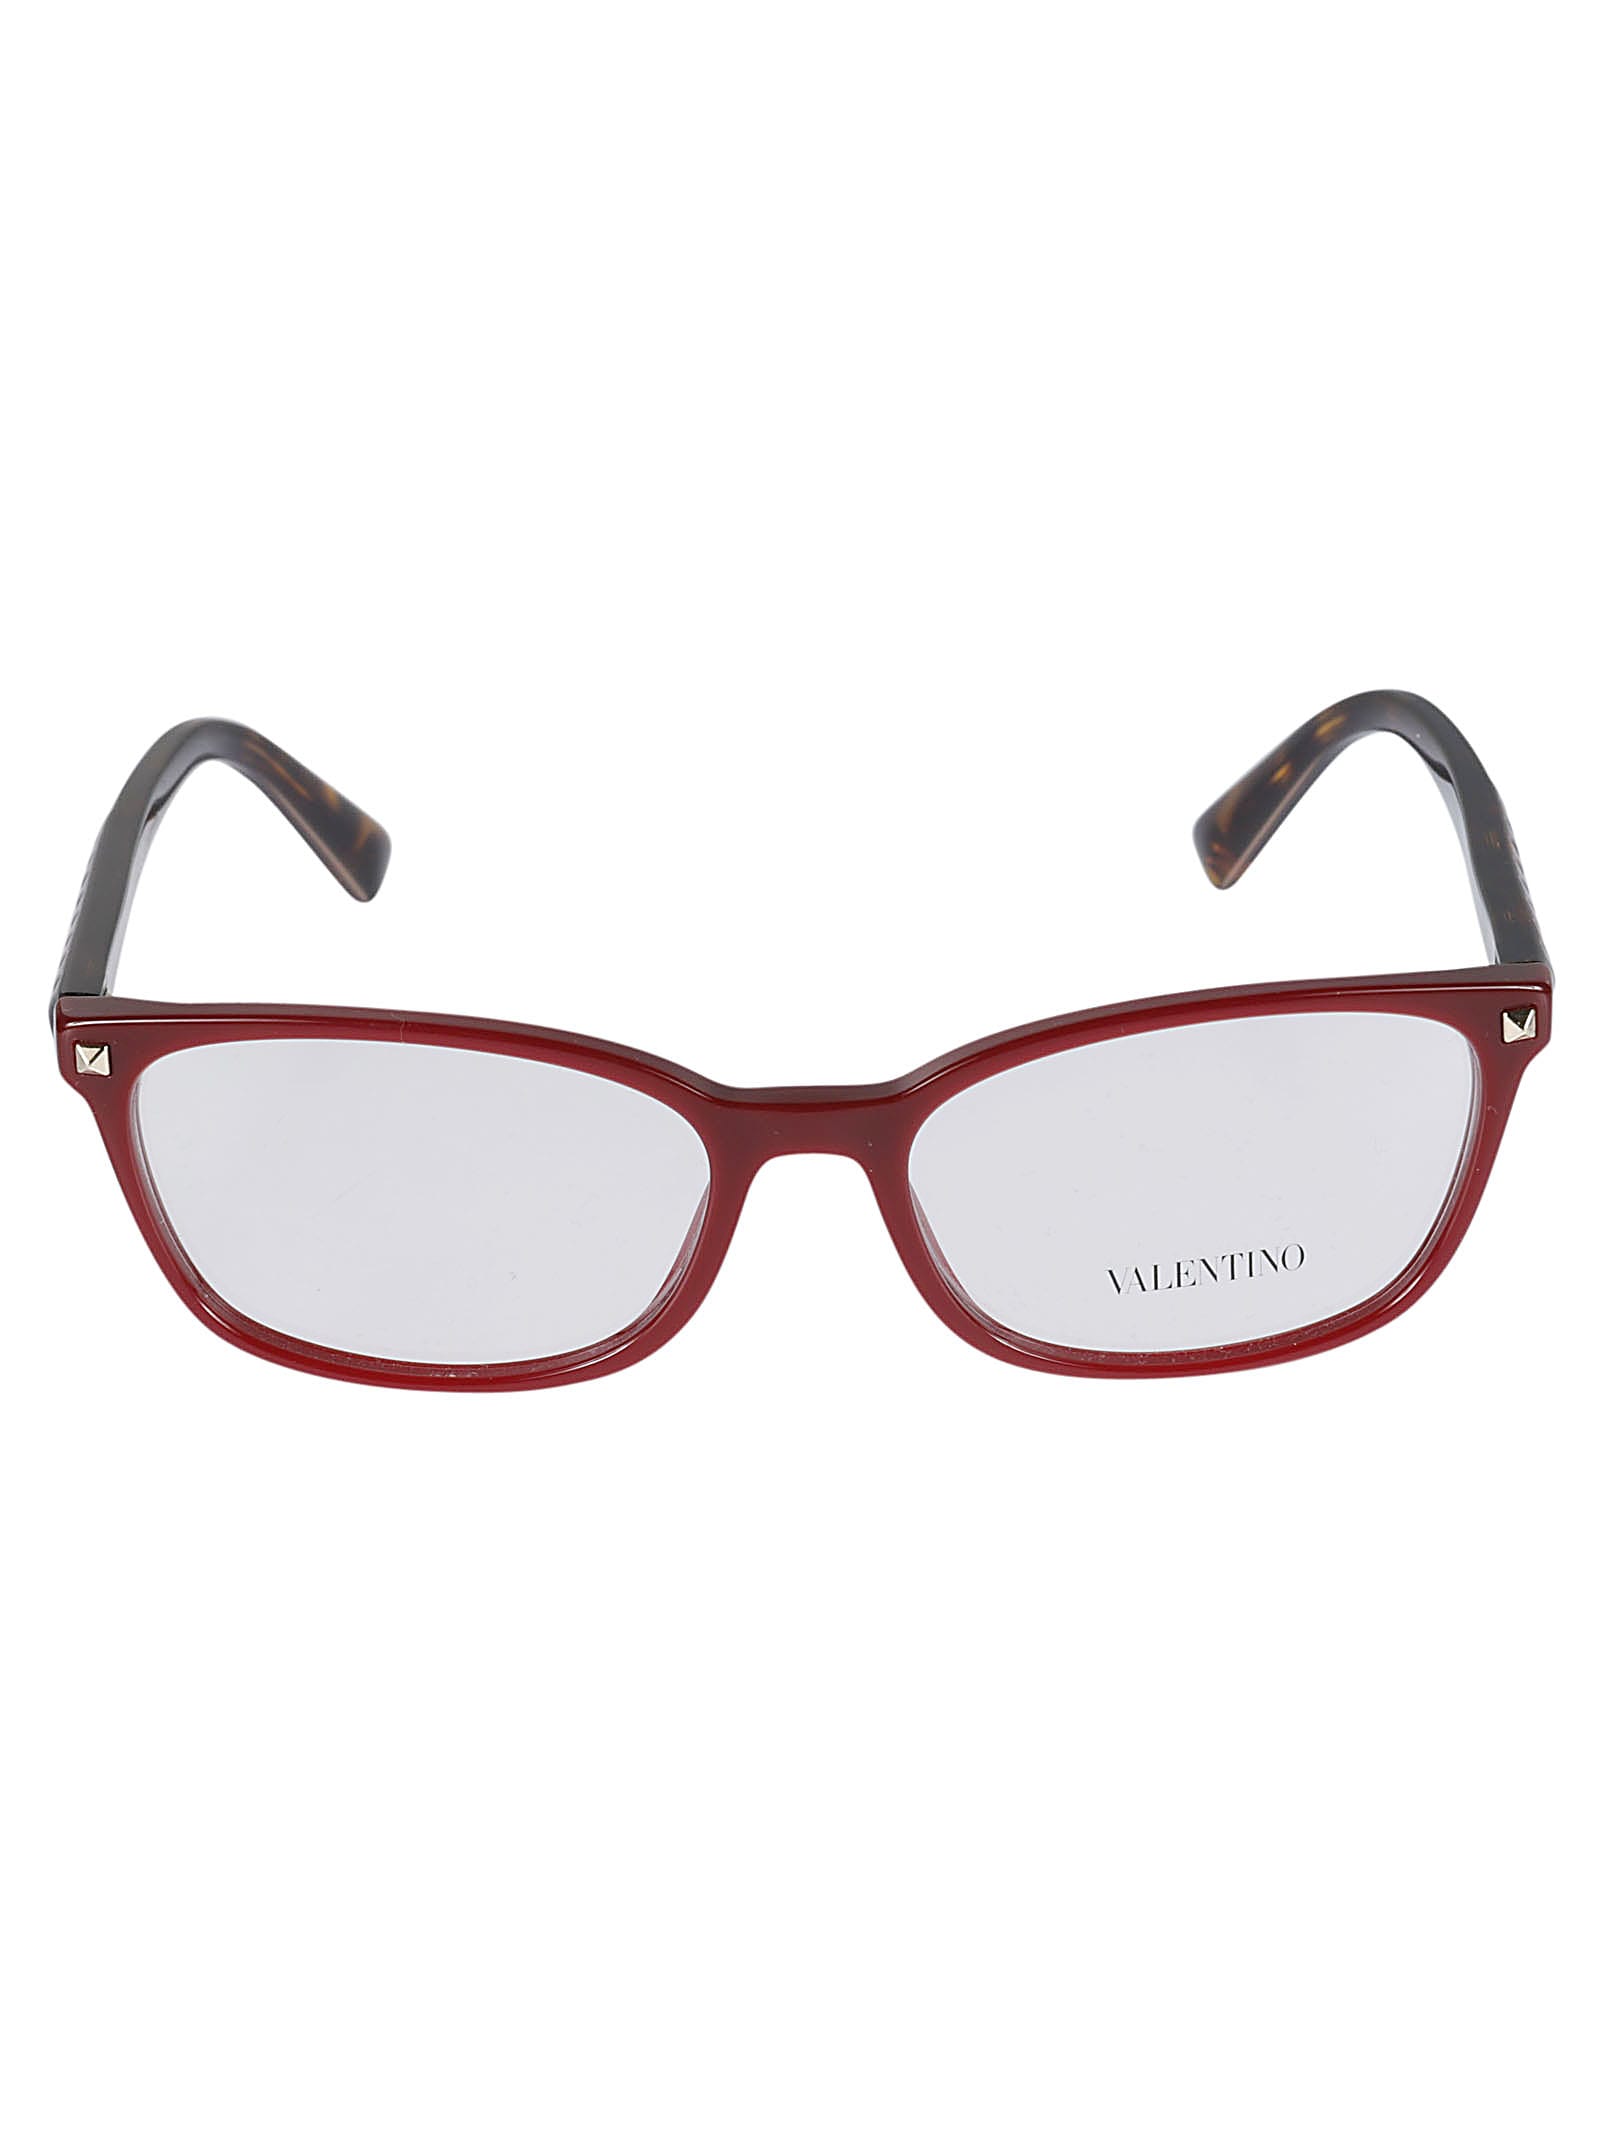 Valentino Vista5139 Glasses